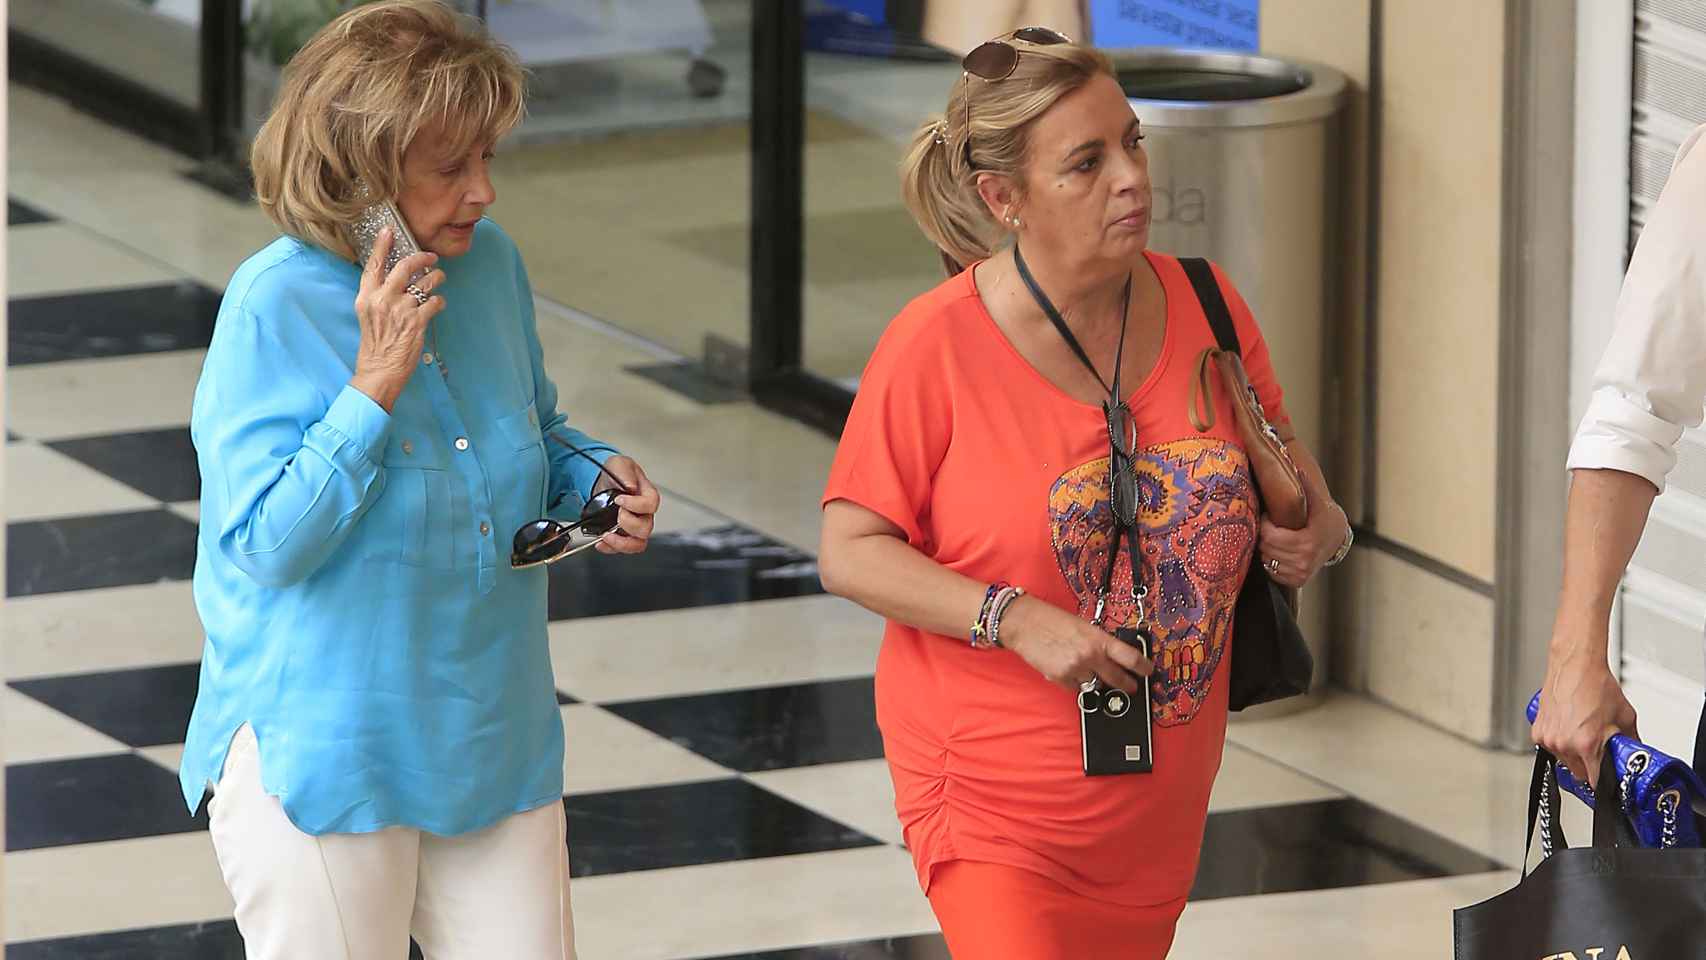 María Teresa acudía esta semana a un centro comercial con su hija Carmen.